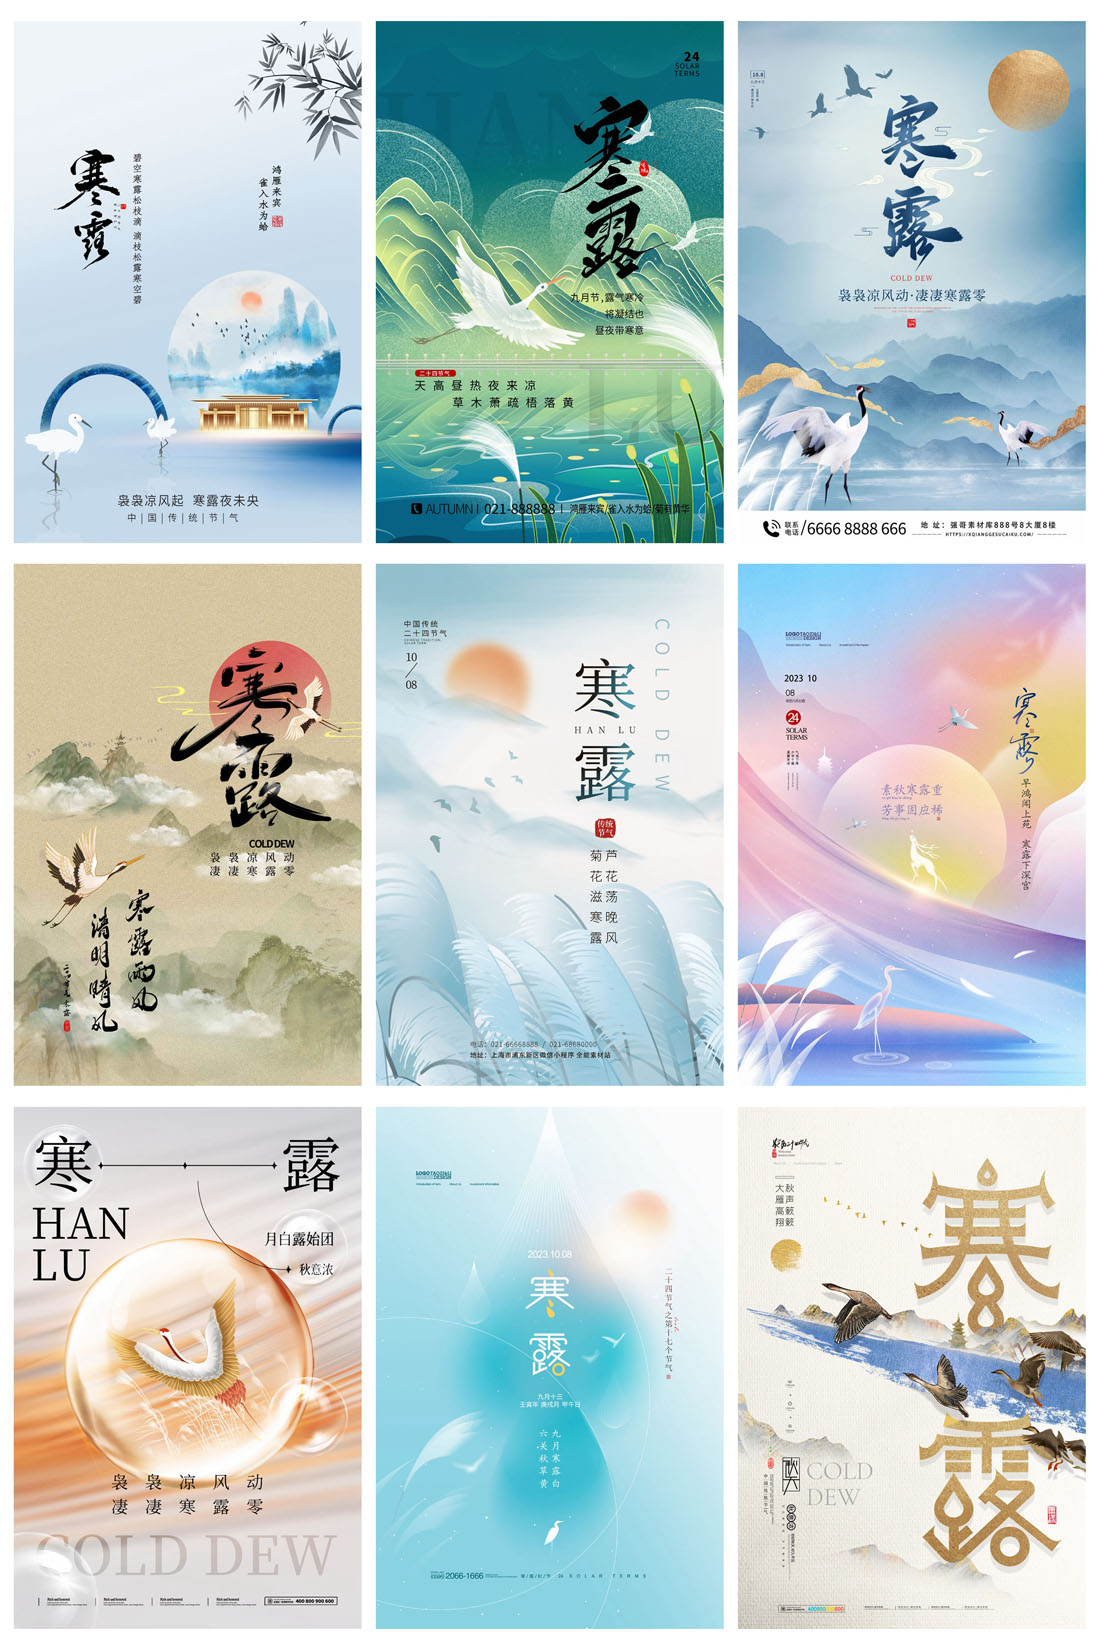 94款中国传统二十四节气之寒露节日海报PSD模板 设计素材 第14张